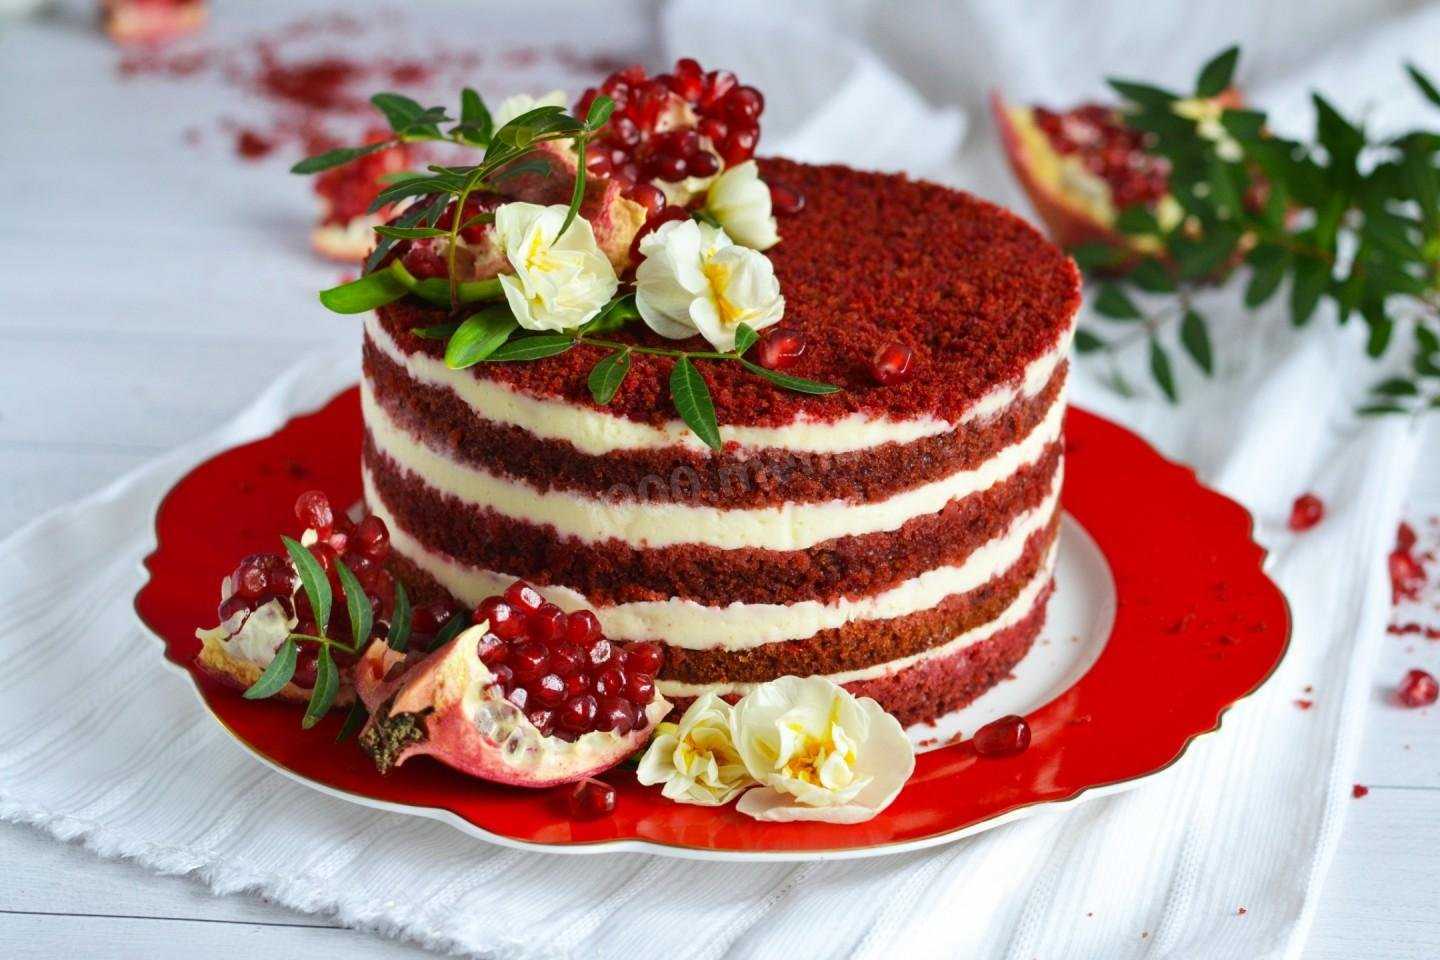 Вы еще не попробовали торт Красный бархат Тогда вам очень повезло, потому что открытие его восхитительного вкуса еще ждет вас впереди Попробуйте приготовить его, пользуясь нашим рецептом